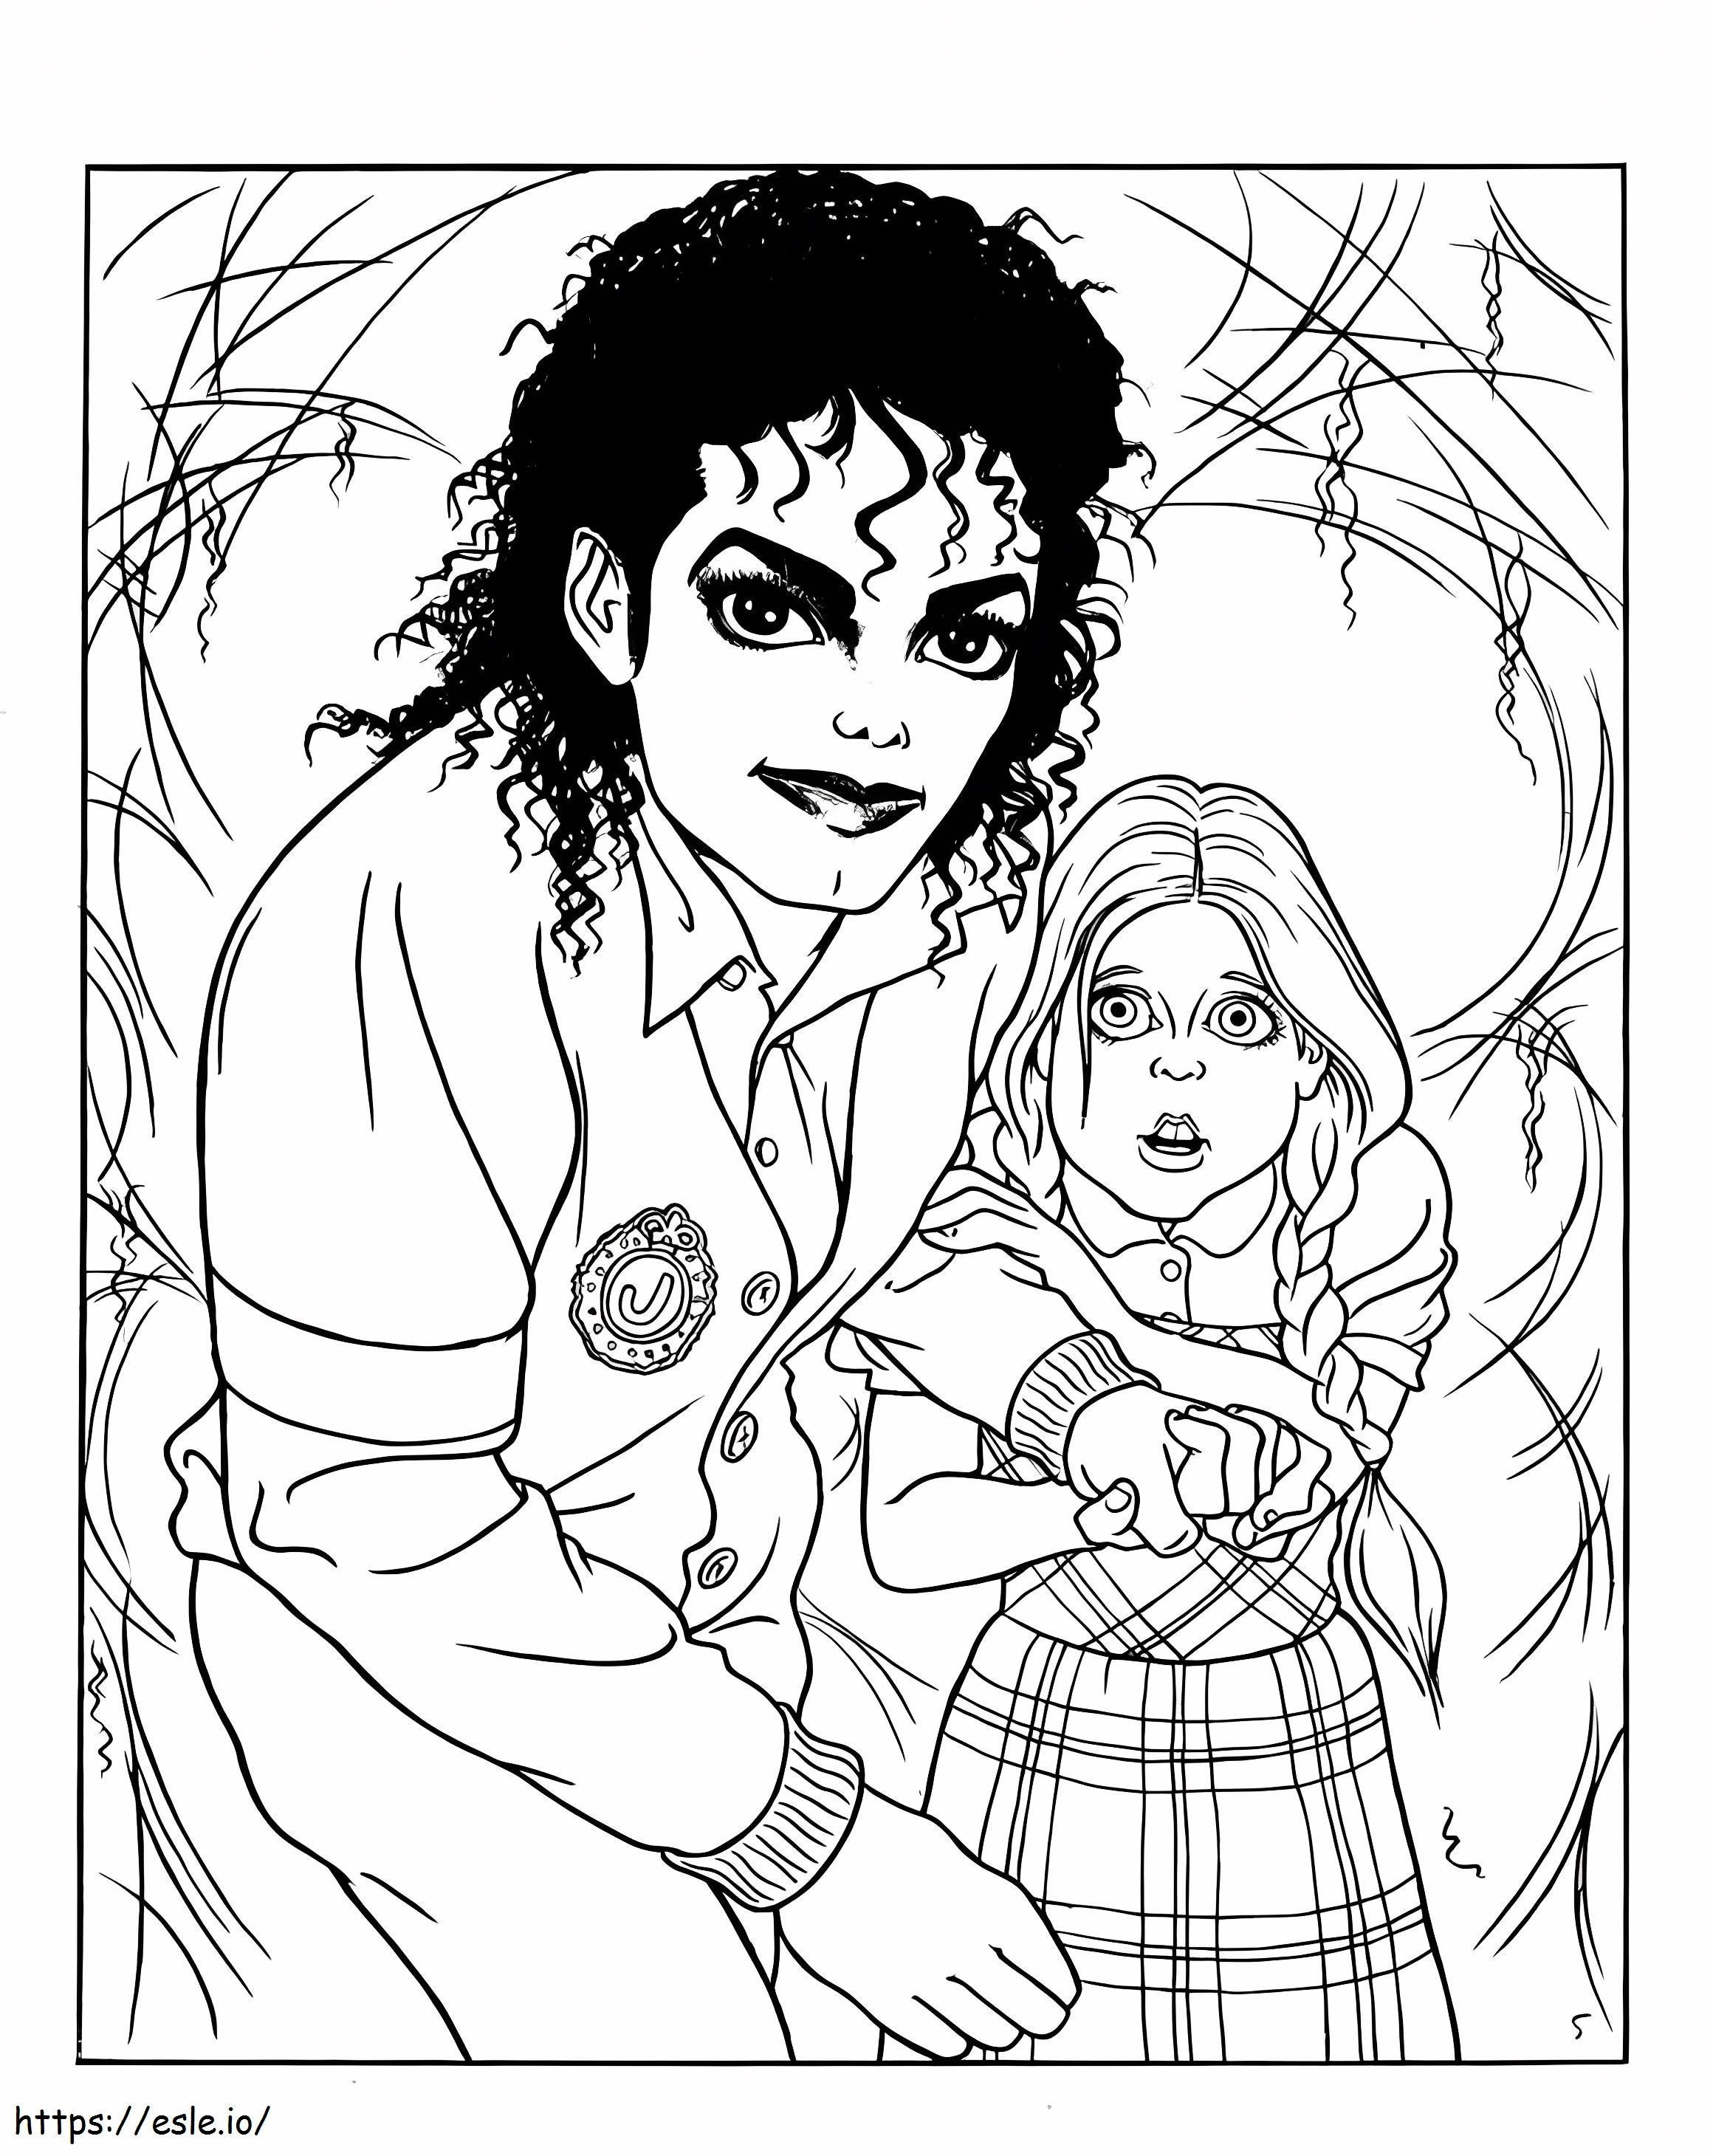 Michael Jackson e il ragazzino da colorare